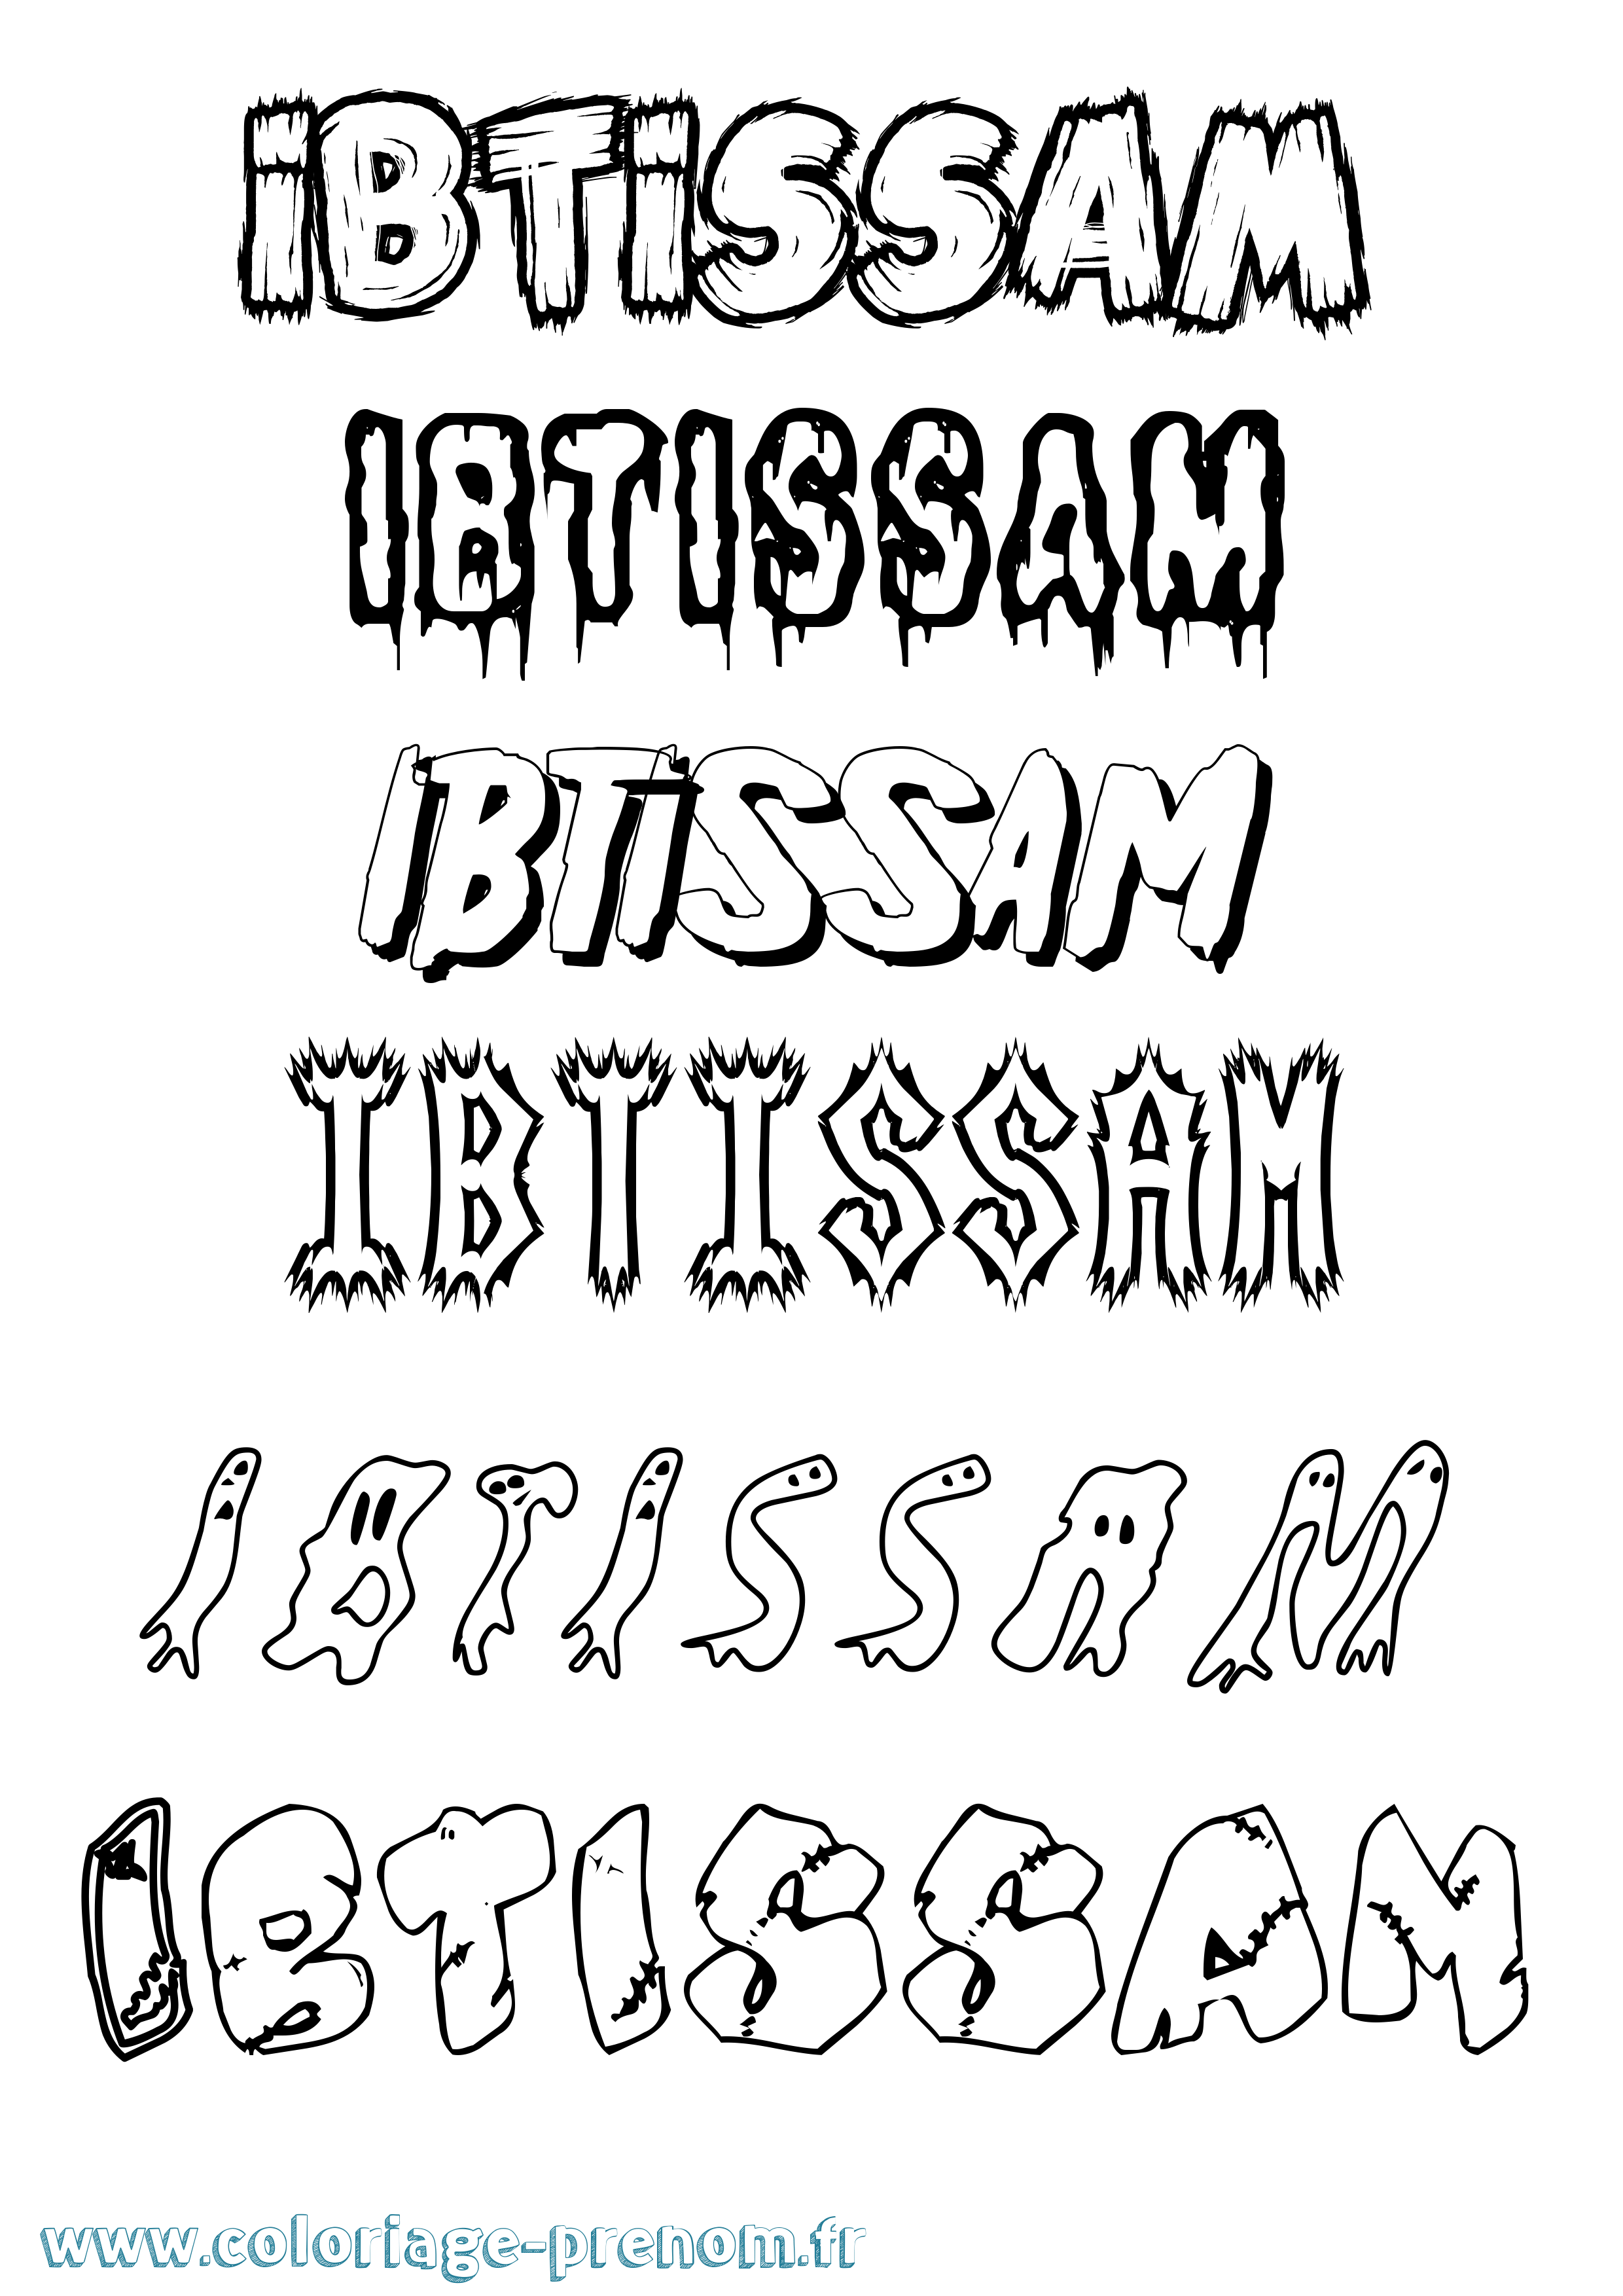 Coloriage prénom Ibtissam Frisson